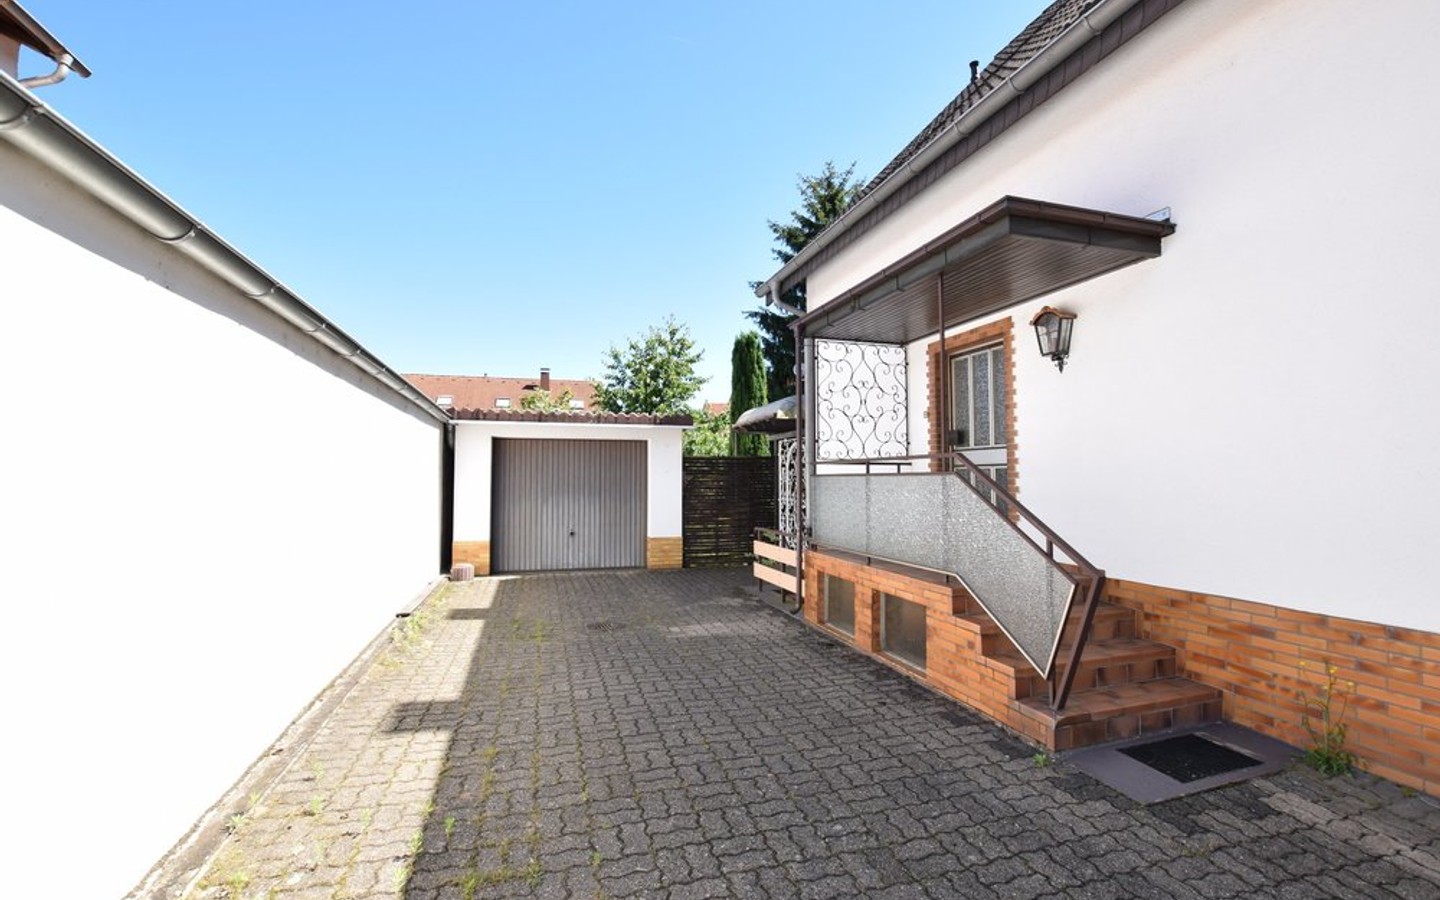 Hauseingang/Garagenzufahrt - Kleines 1-2 Familienhaus mit großem Garten